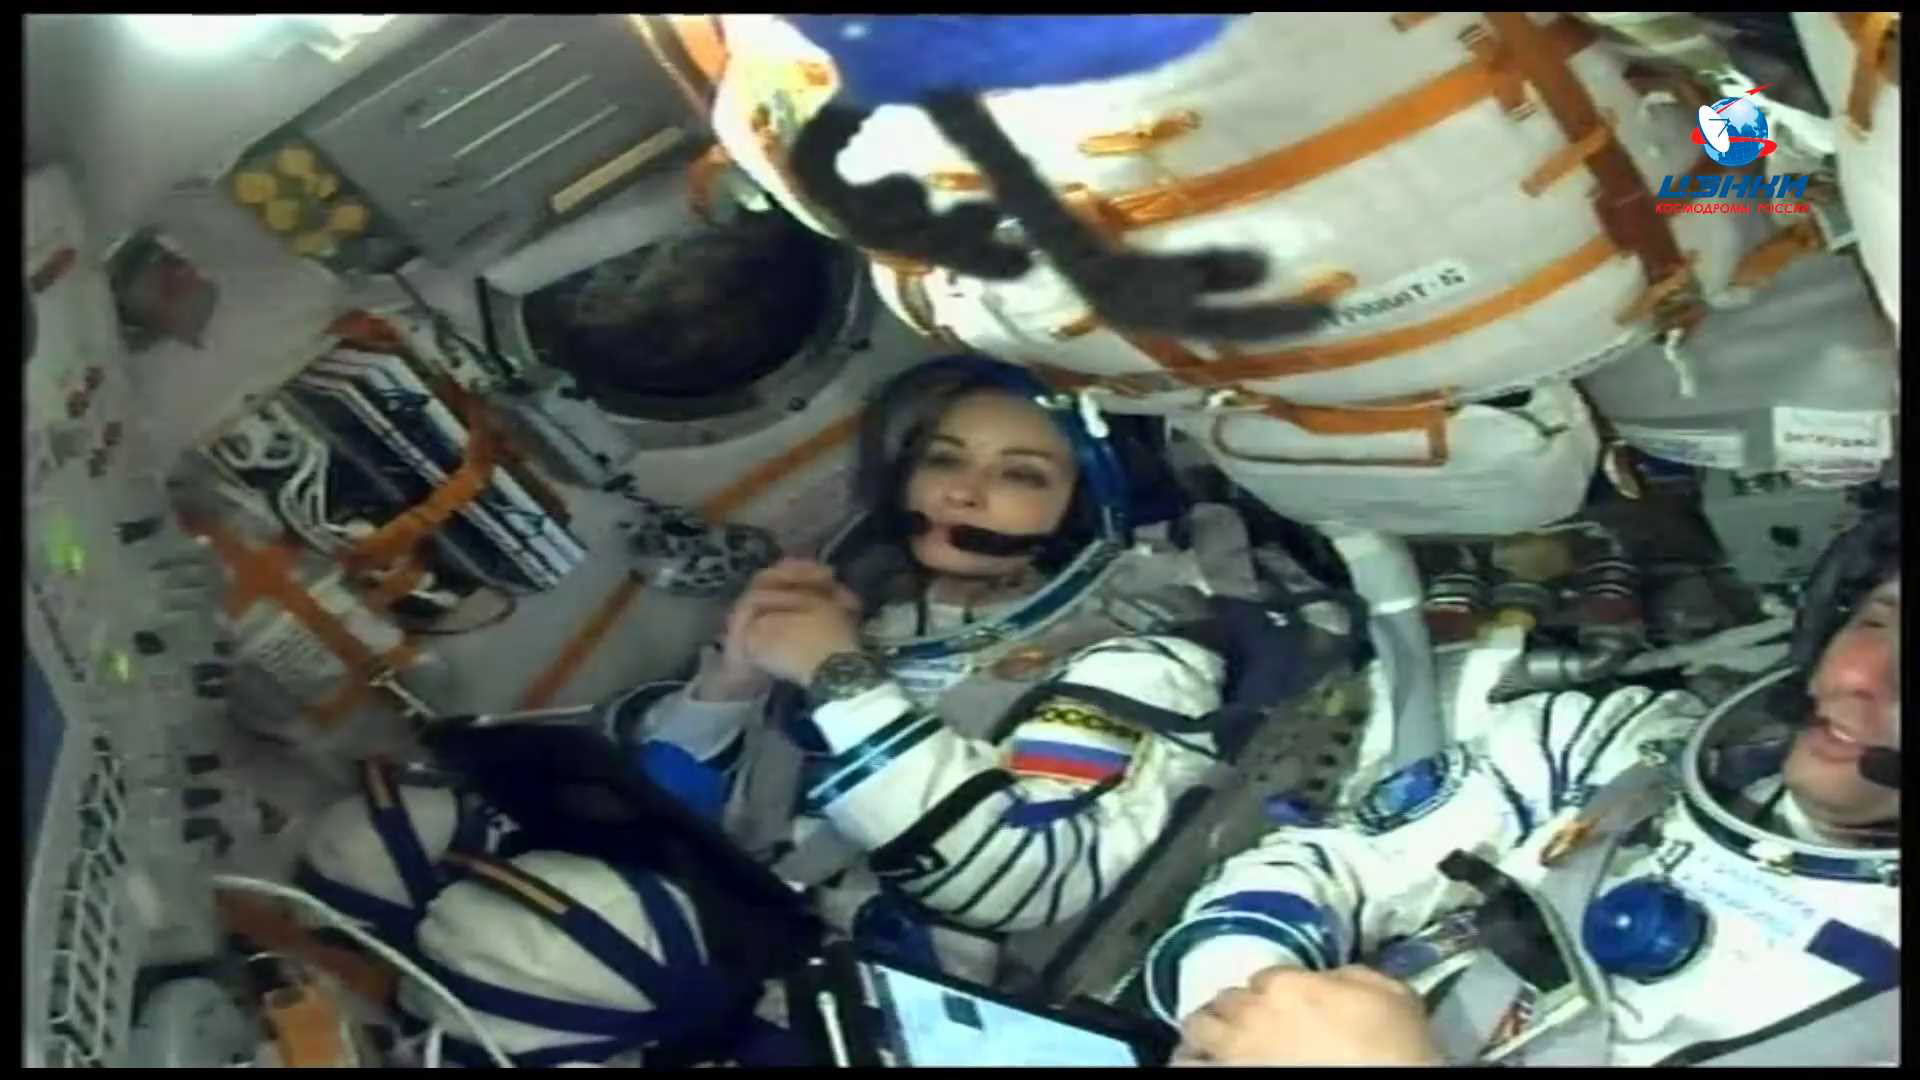 Космонавт полетевший в космос вторым. Союз МС 19 Пересильд шипенкор.